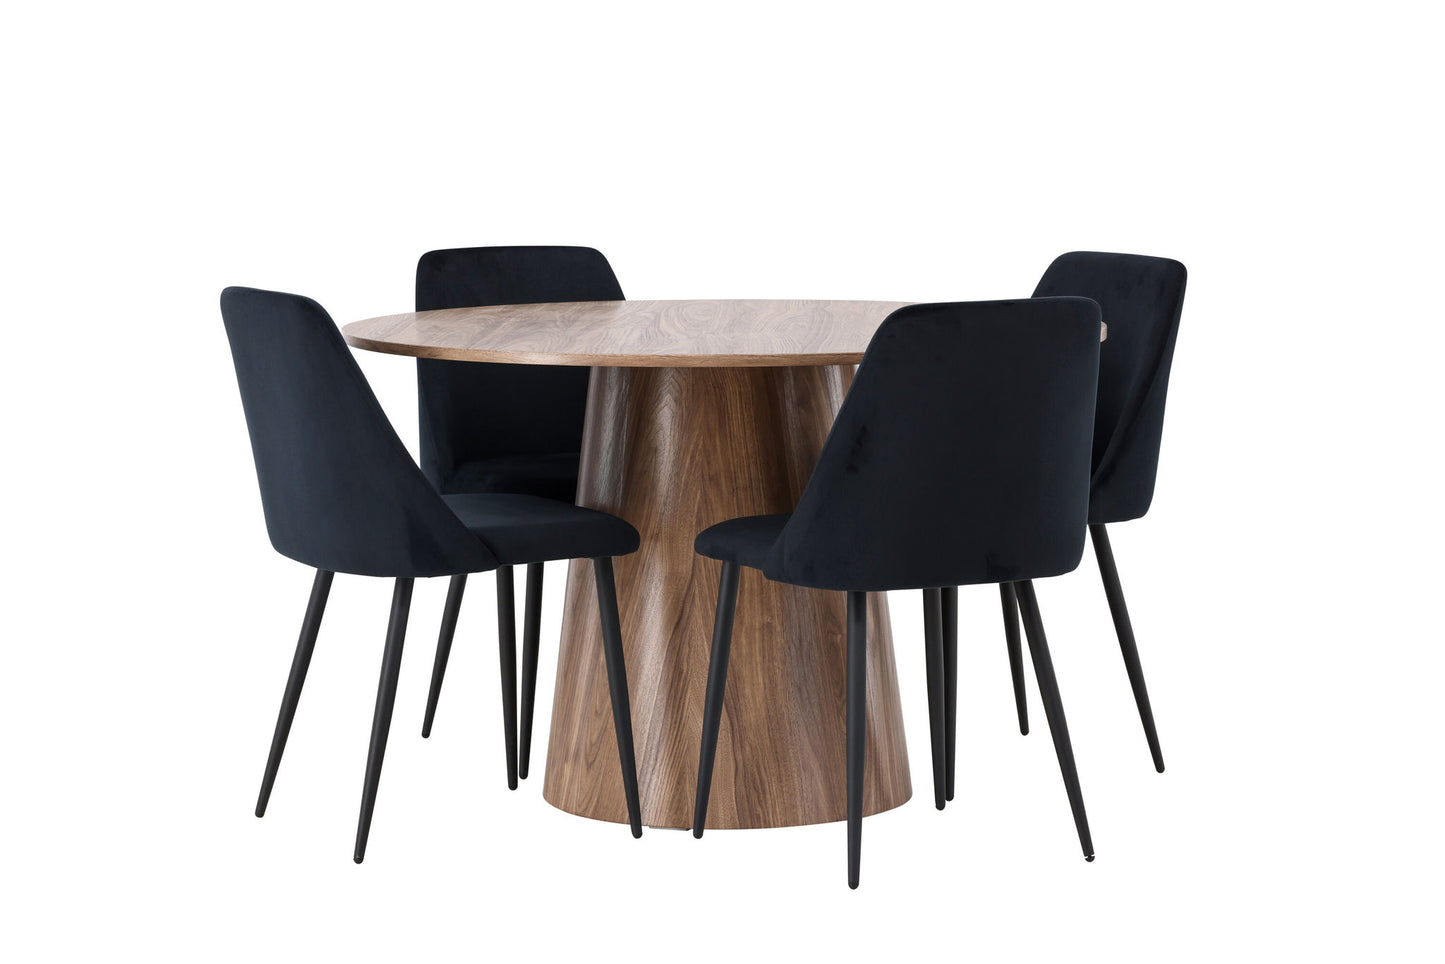 Lanzo spisebord φ120 - Naturlig / naturlig MDF +nat spisestol - sort / sort fløjl _4